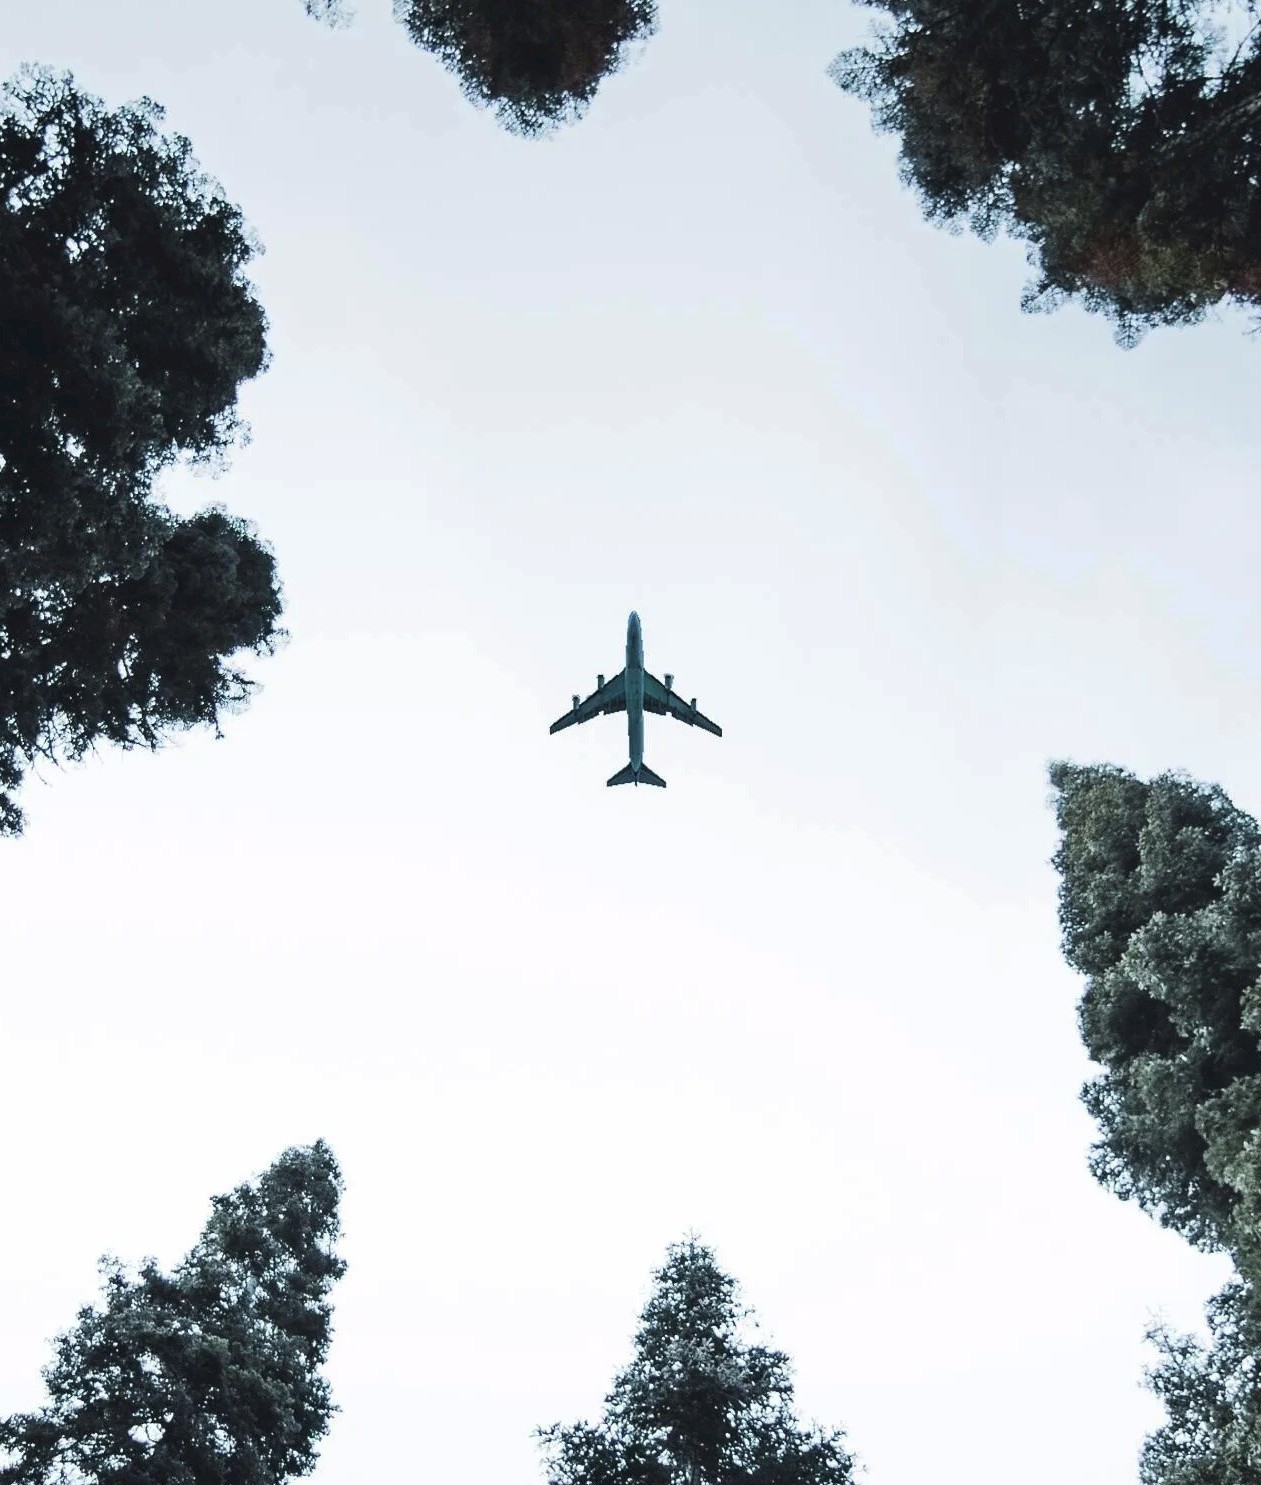 aeroplane overhead